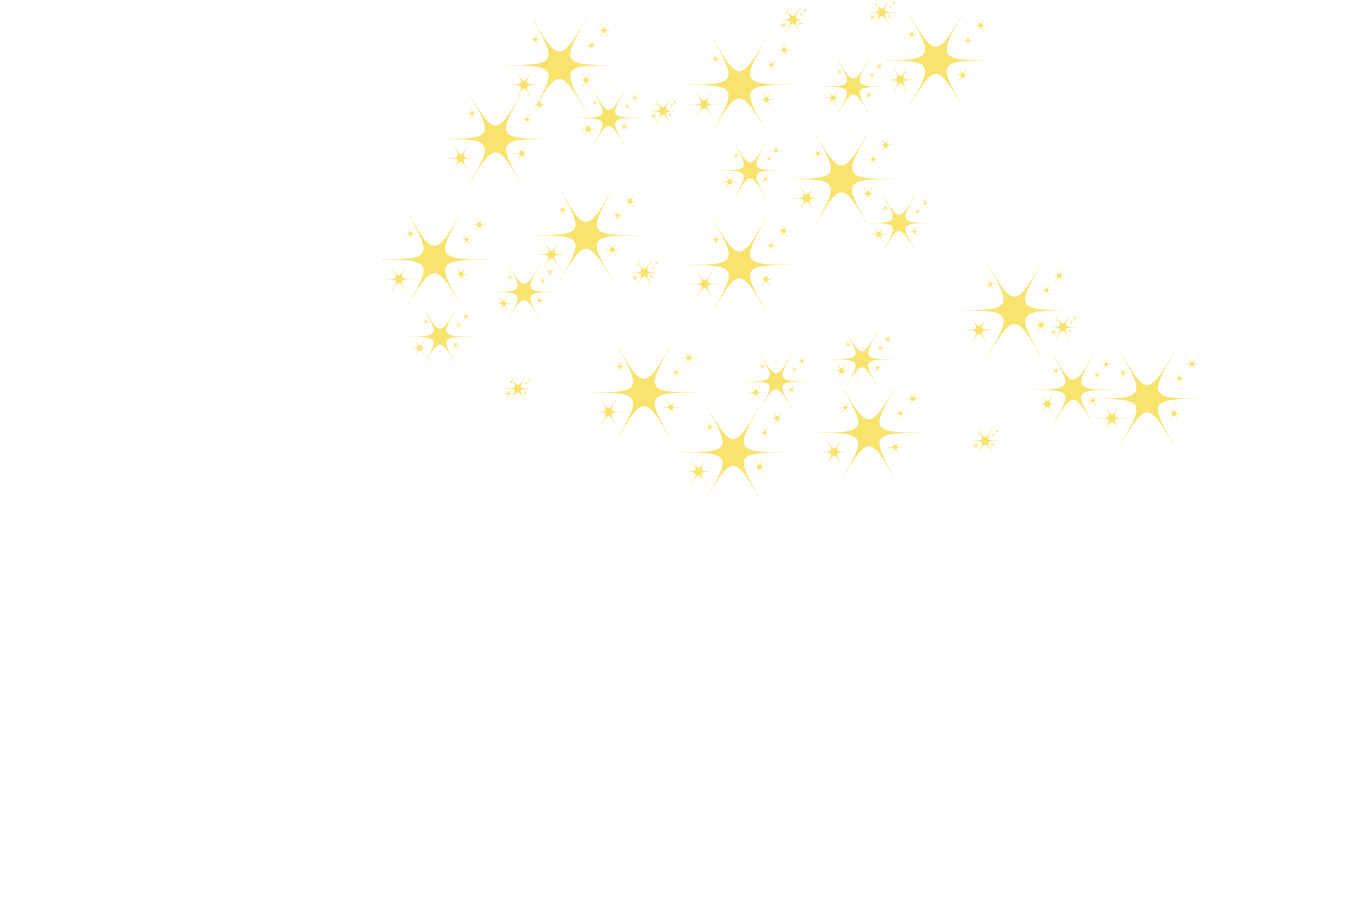 StarLights